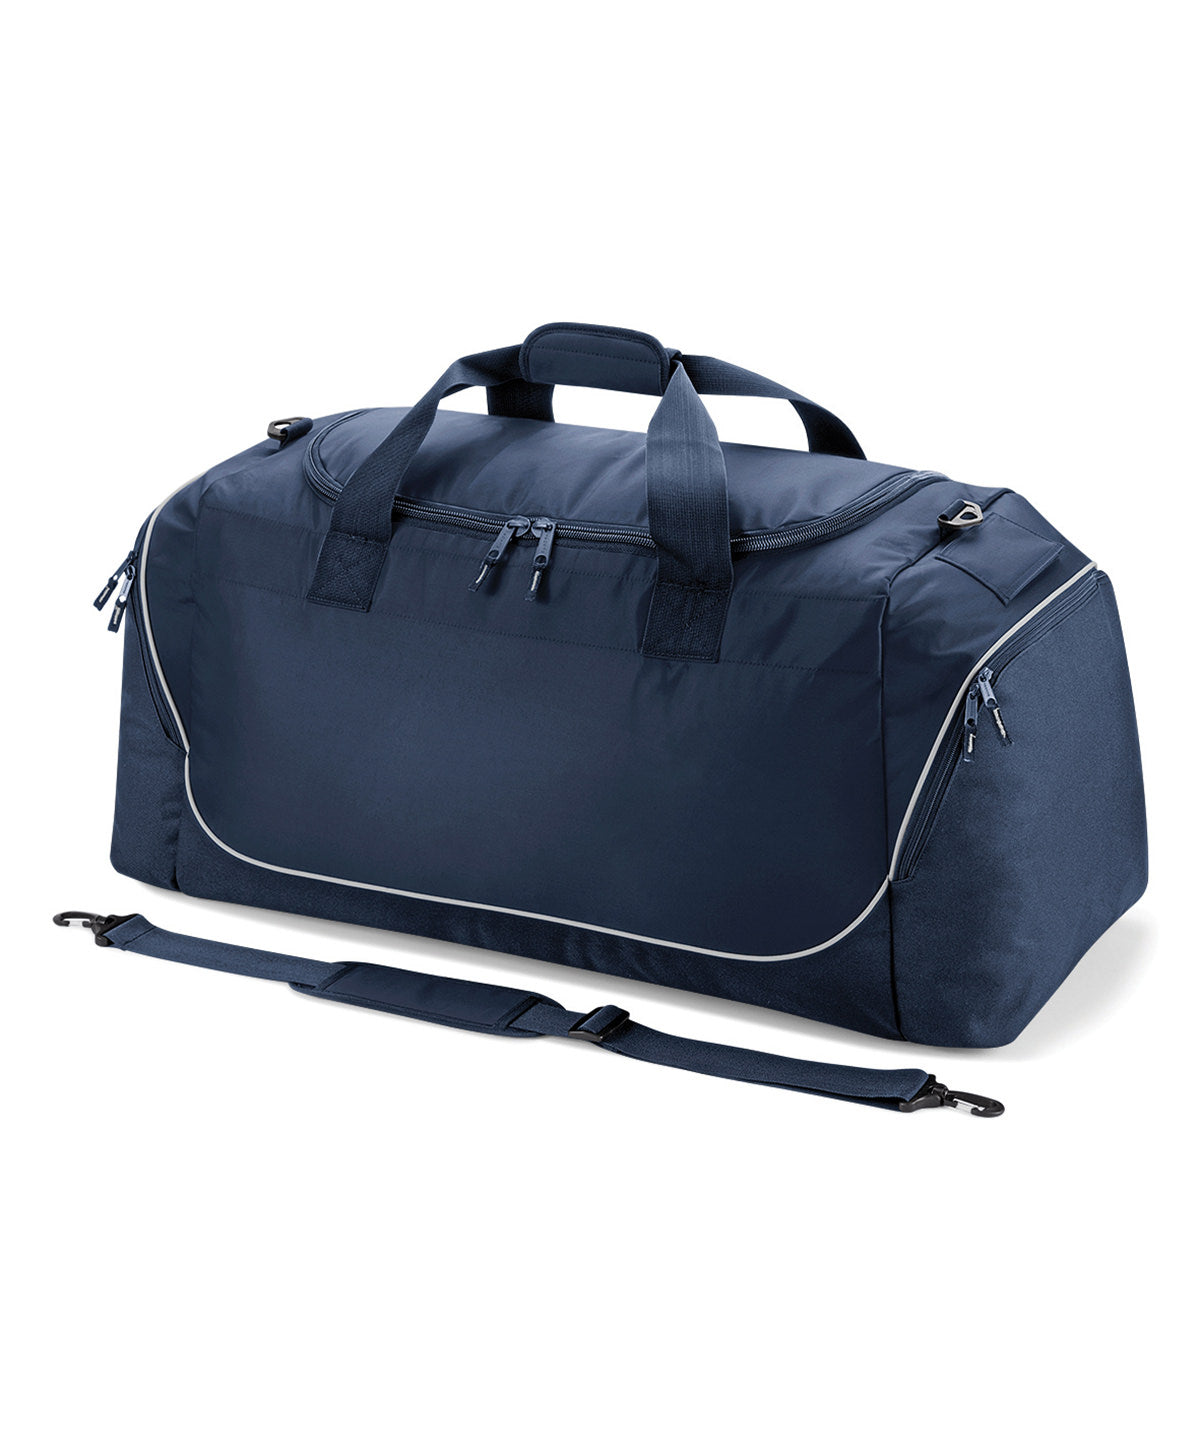 Töskur - Teamwear Jumbo Kit Bag